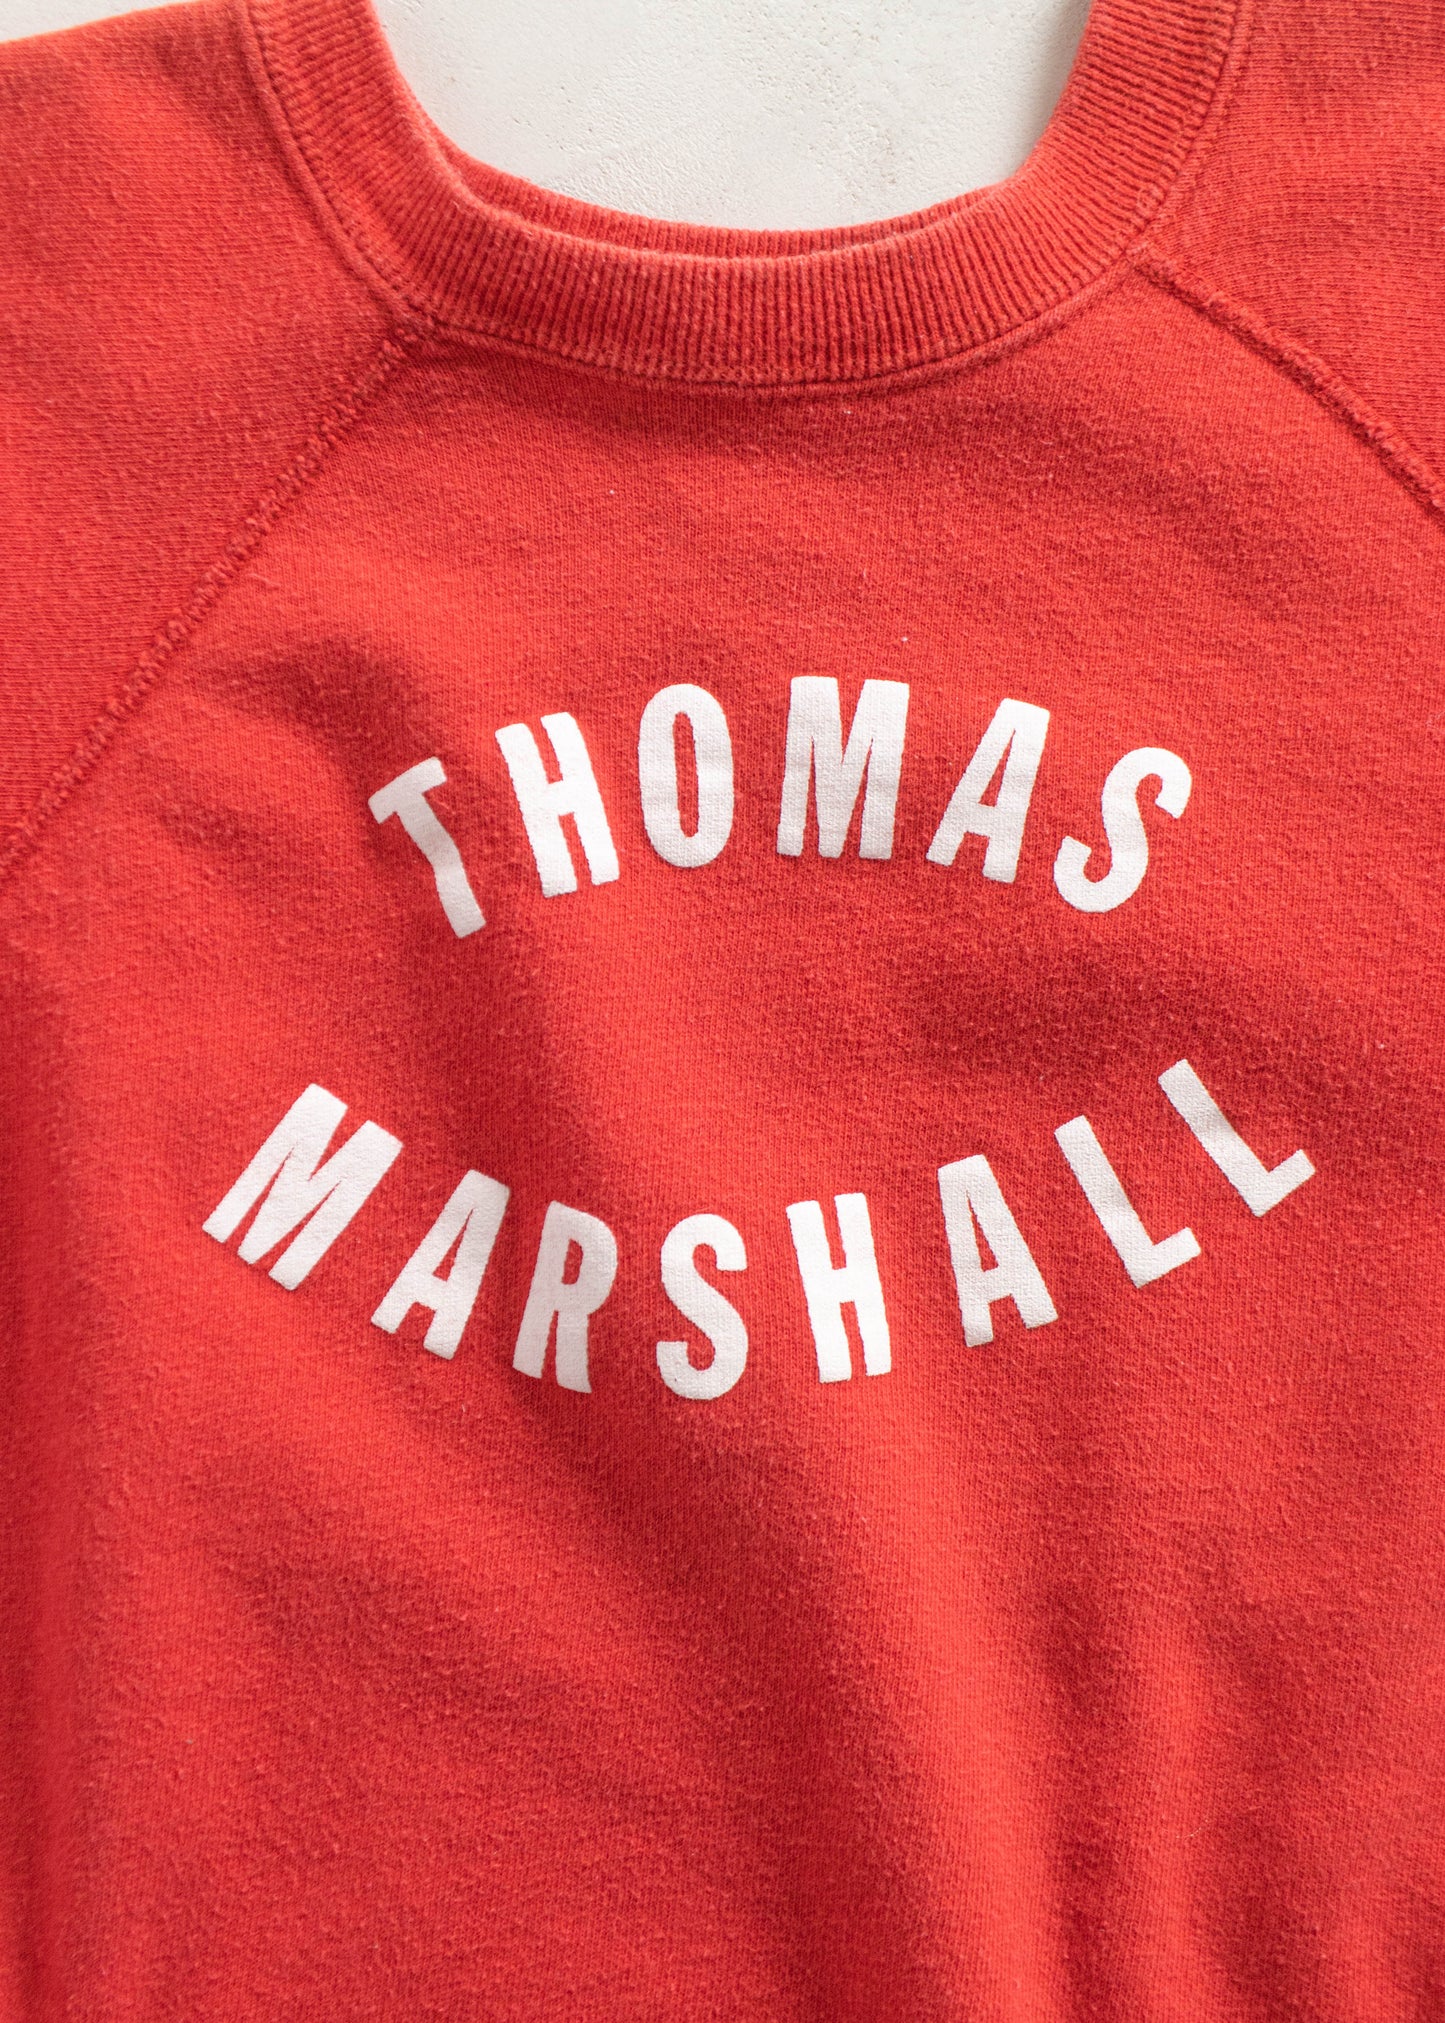 Vintage 1970s Thomas Marshall Short Sleeve Sweatshirt Size 2XS/XS